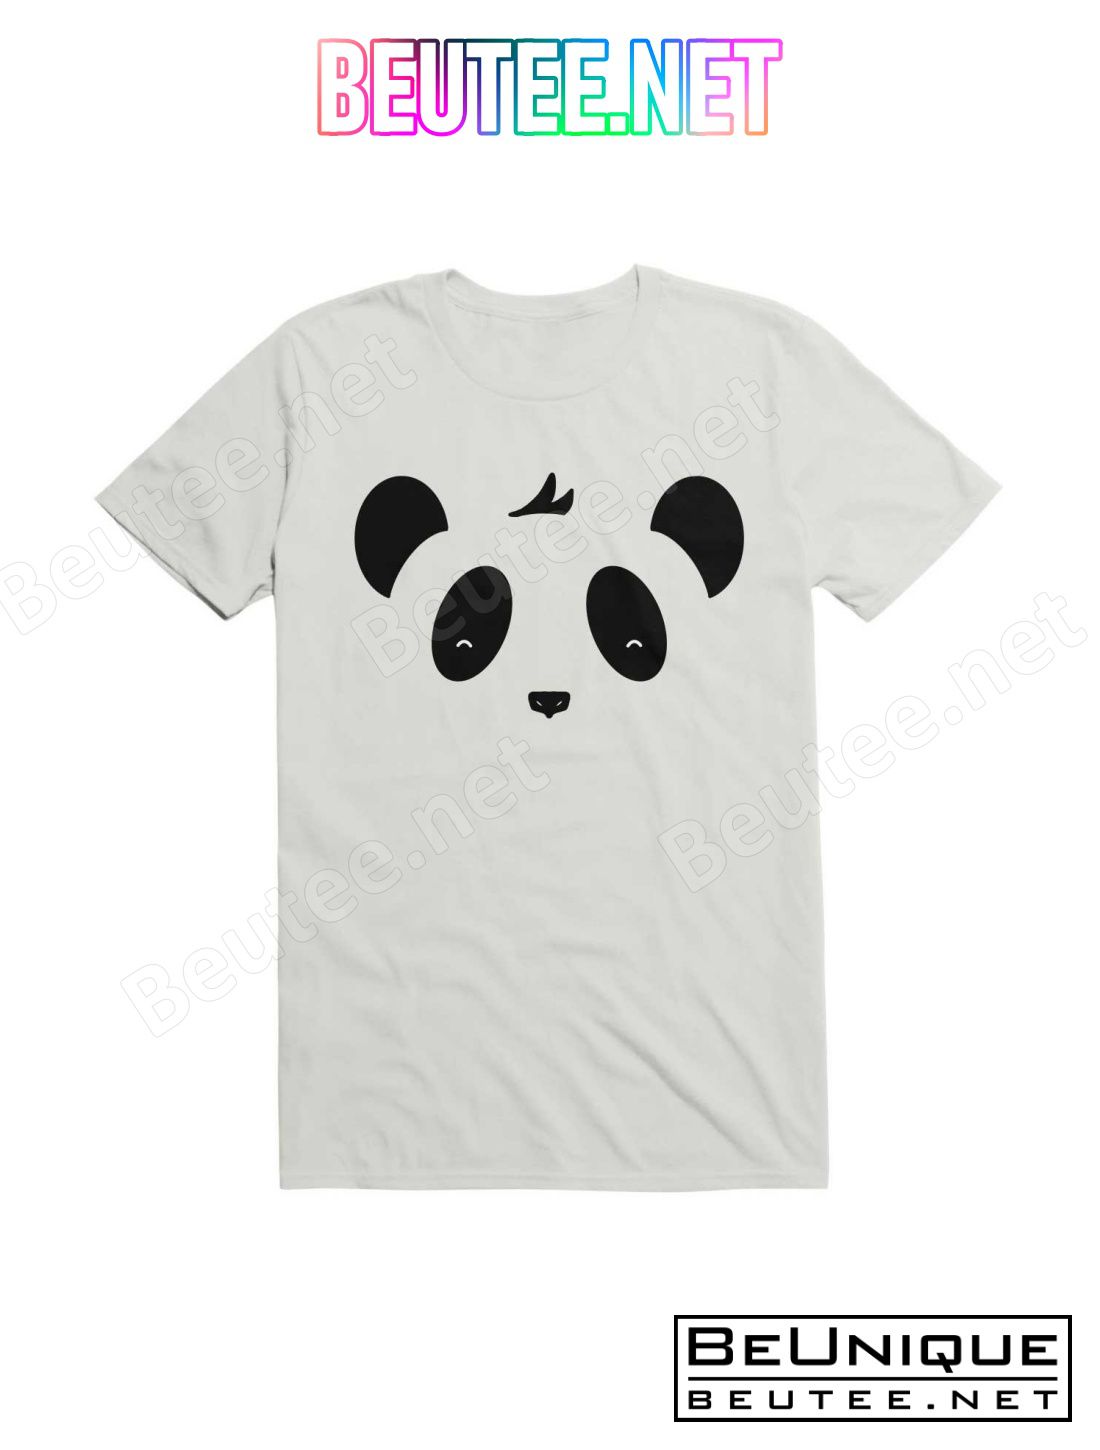 Kawaii Panda Face T-Shirt